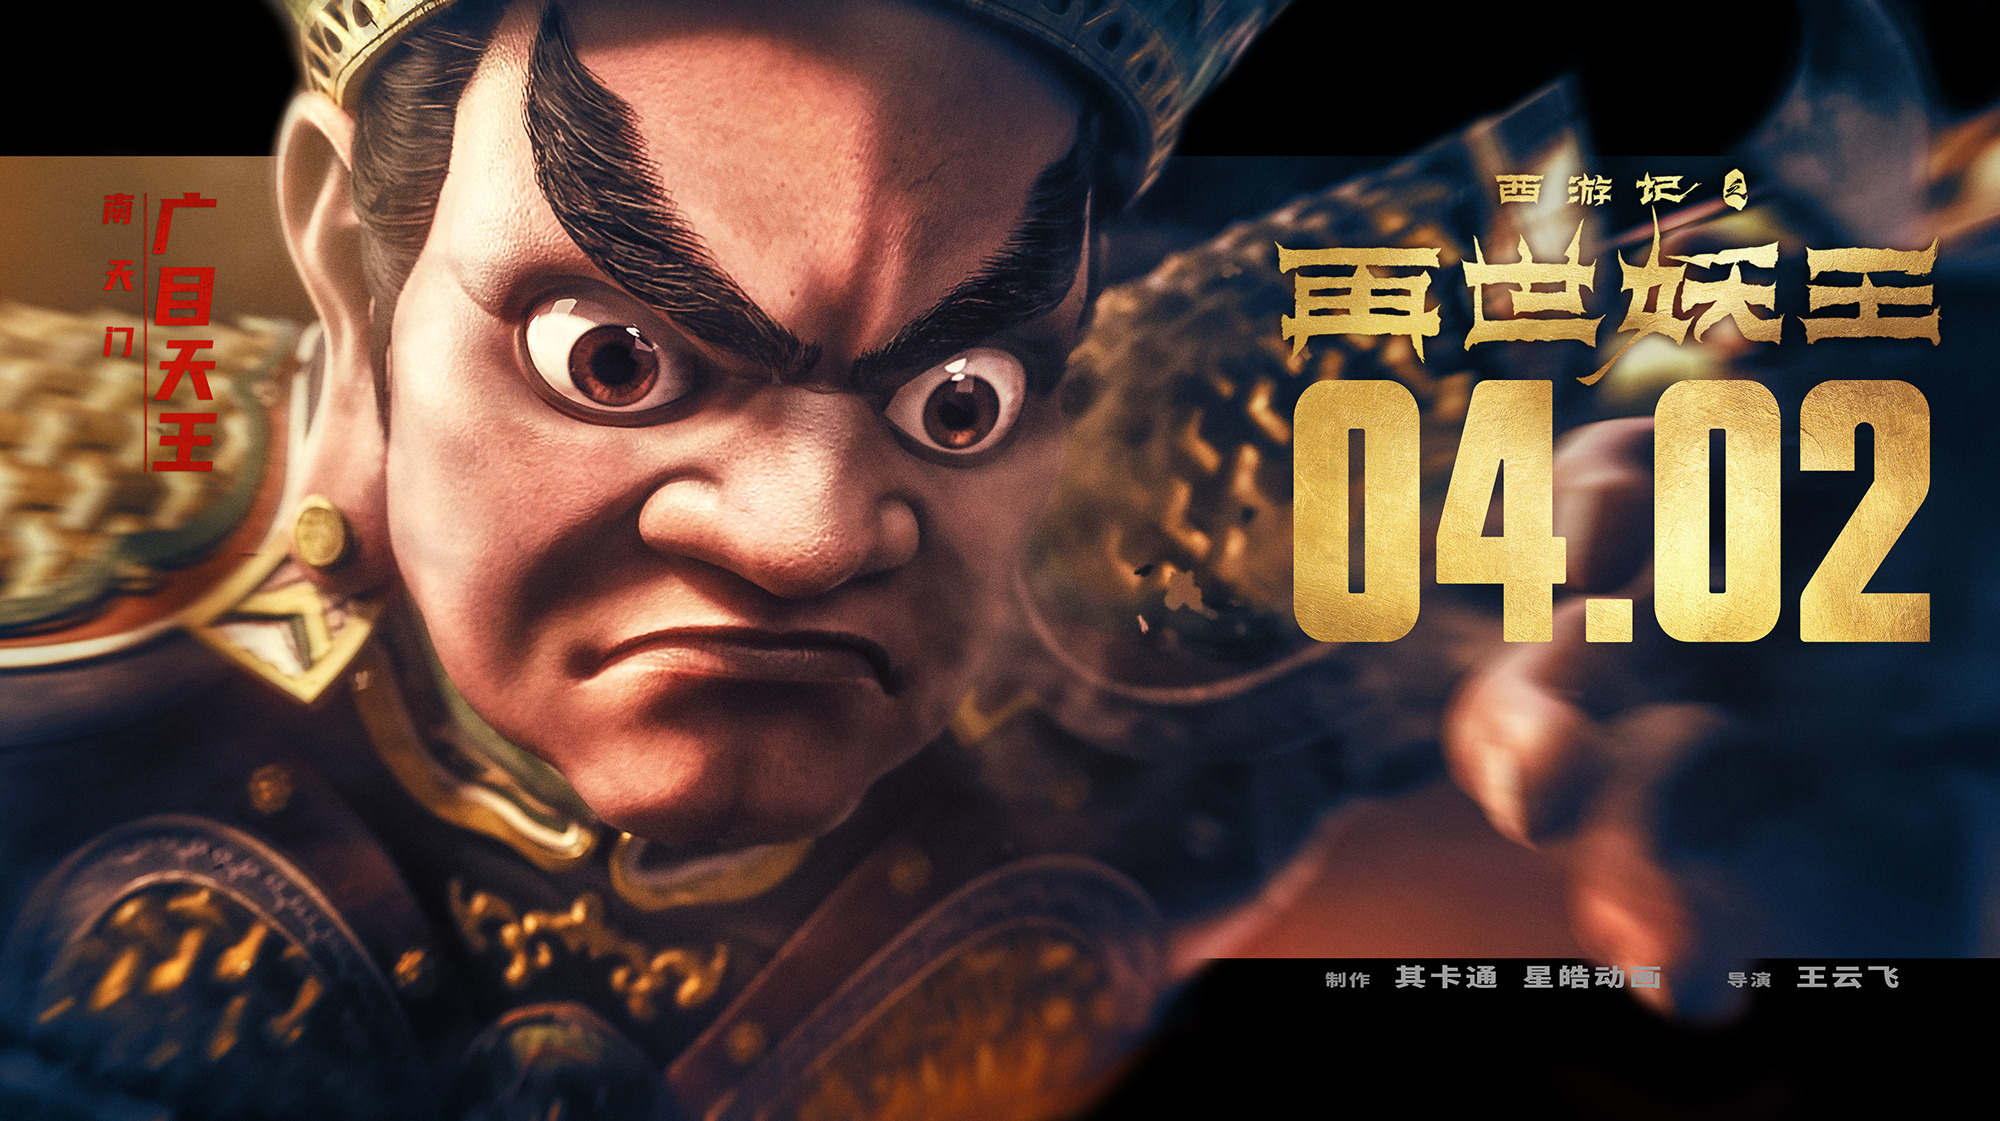 Mega Sized Movie Poster Image for Xi You Ji Zhi Zai Shi Yao Wang (#20 of 21)